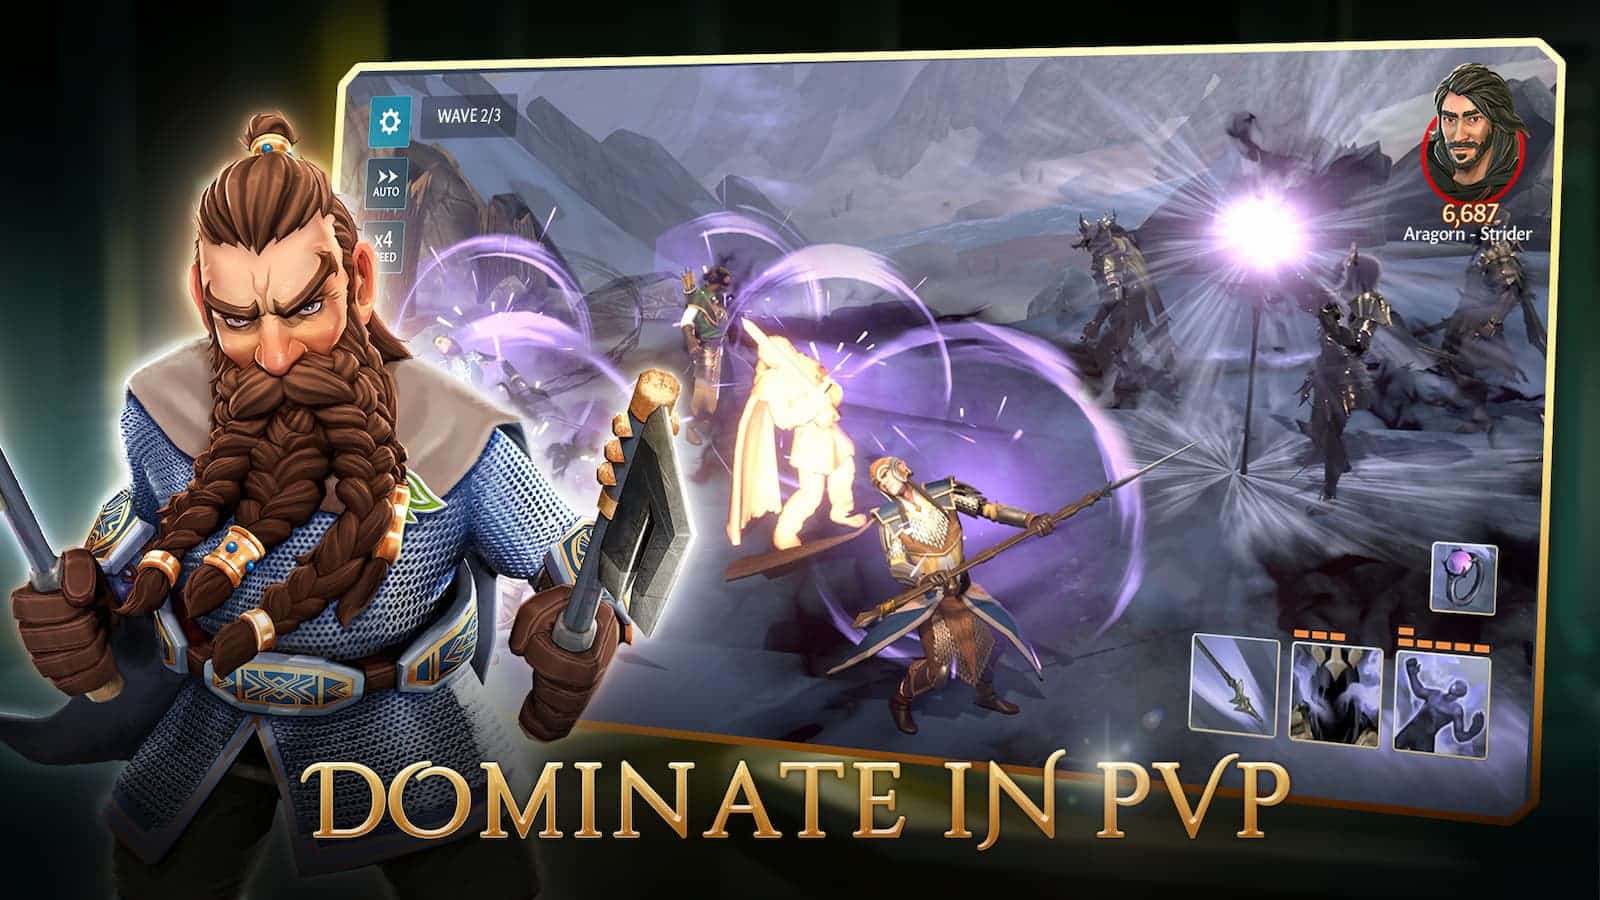 Quatro jogadores estão competindo em um jogo Player vs Player (PvP), com um deles, Aragorn-Strider, dominando a competição. Texto Completo: WAVE 2/3 AUTO 6.687. ×4 Aragorn - Strider DEED DOMINATE IN PVP